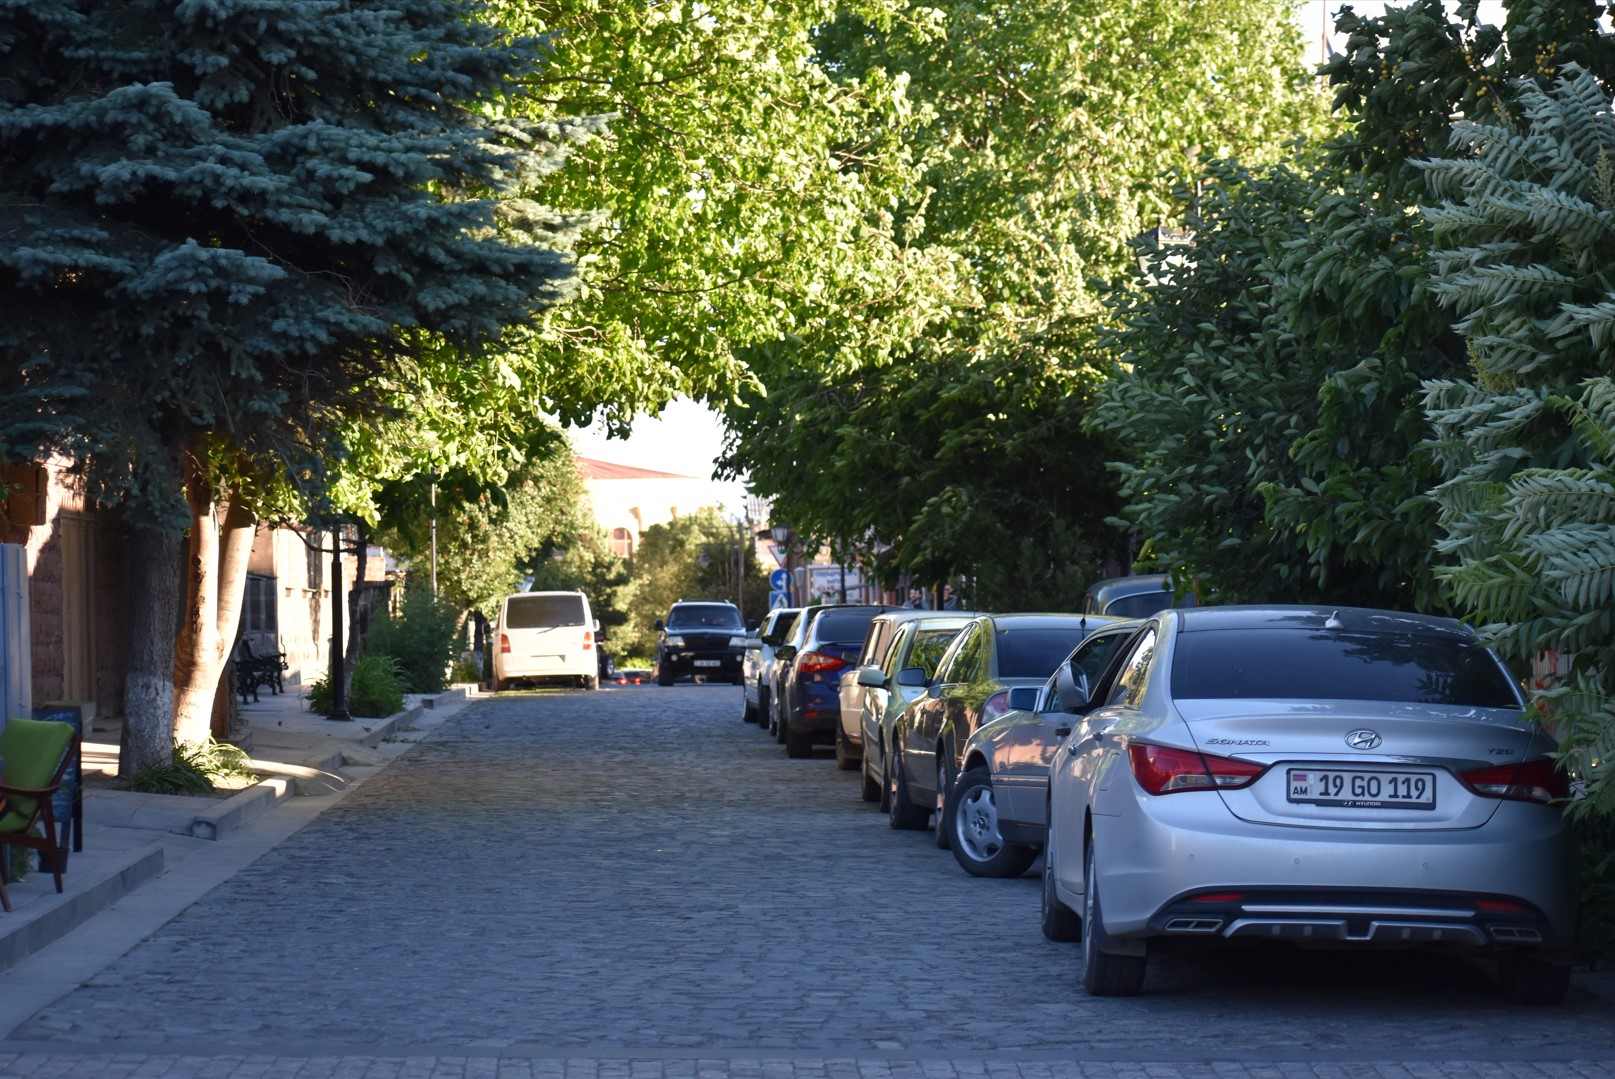 The calm street in Gyumri